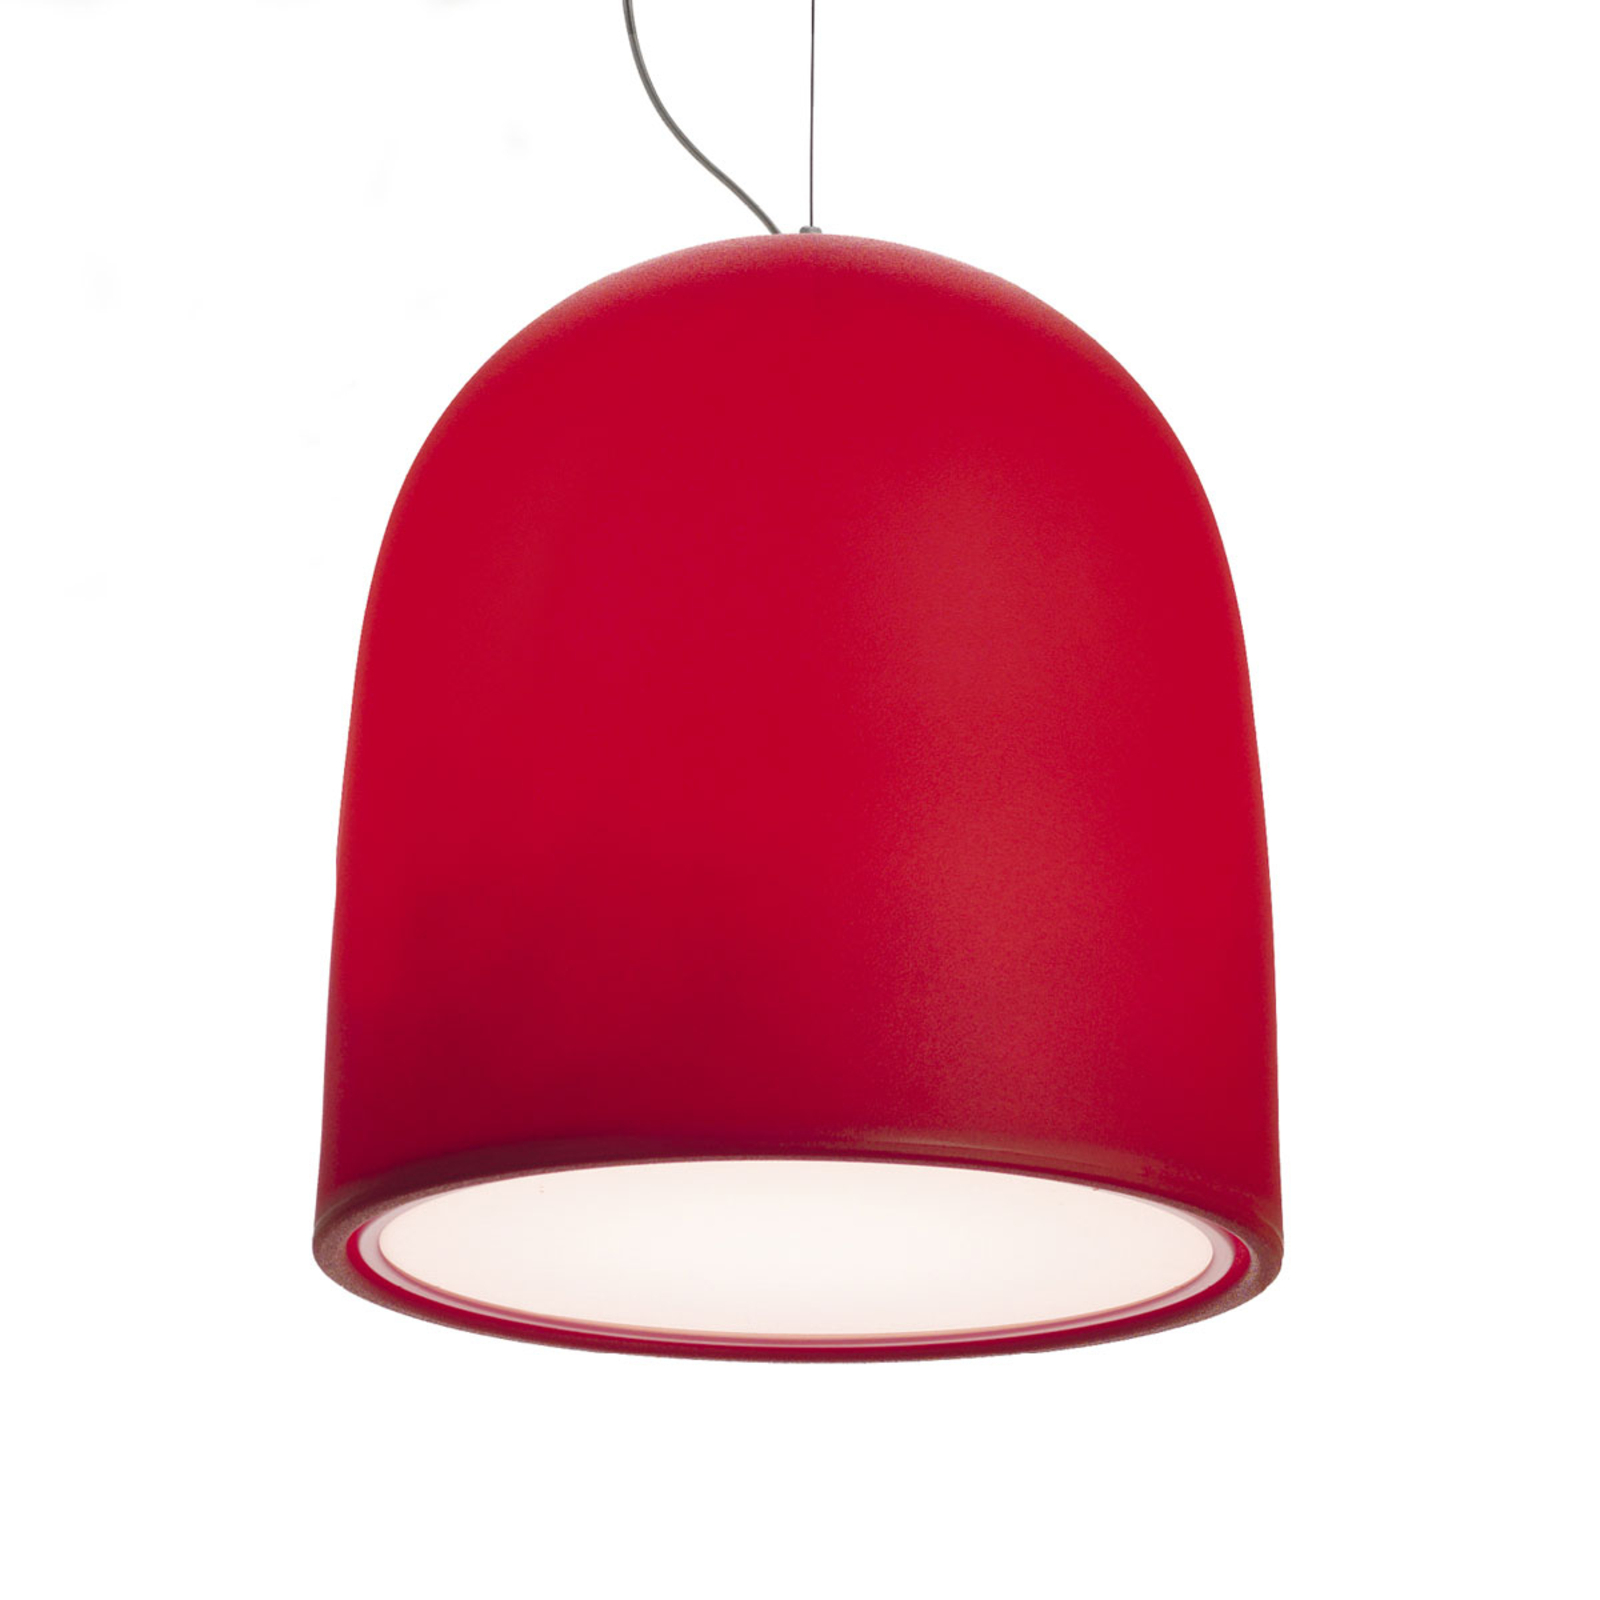 Modo Luce Campanone lampă suspendată Ø 51 cm roșu